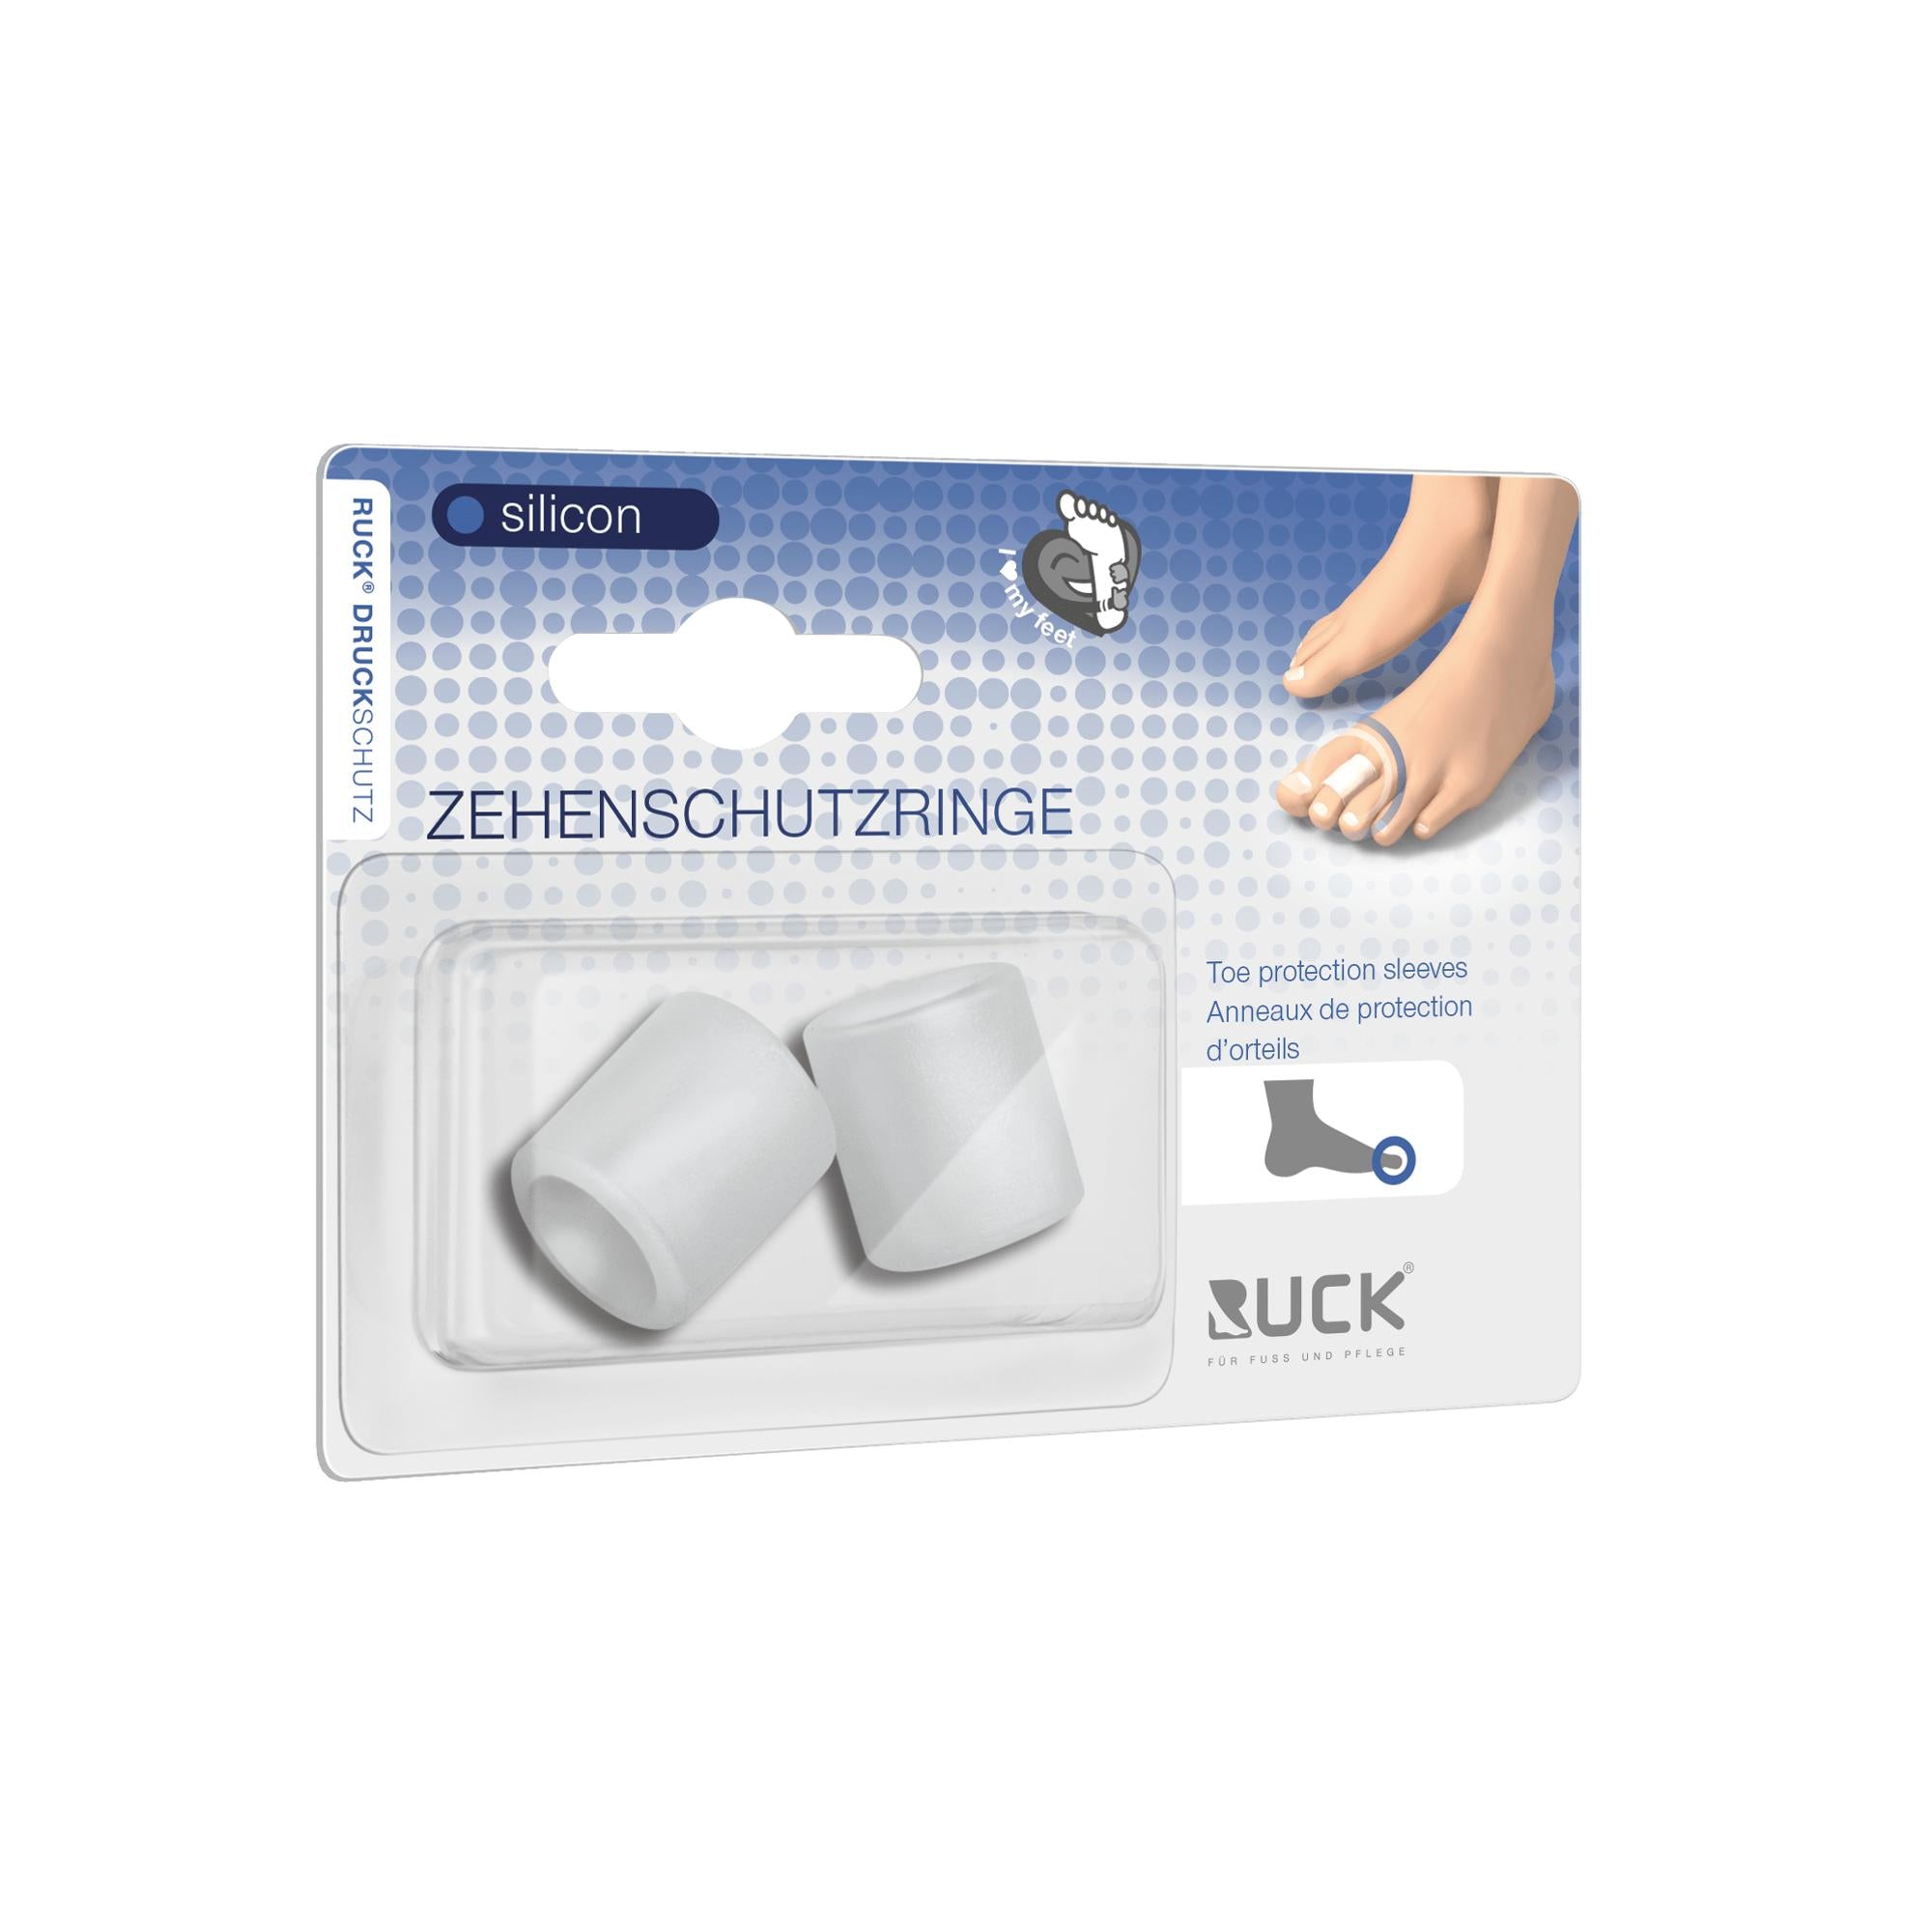 Protection pour orteils en silicone - Maxi - 3 diamètres disponibles - Ruck 